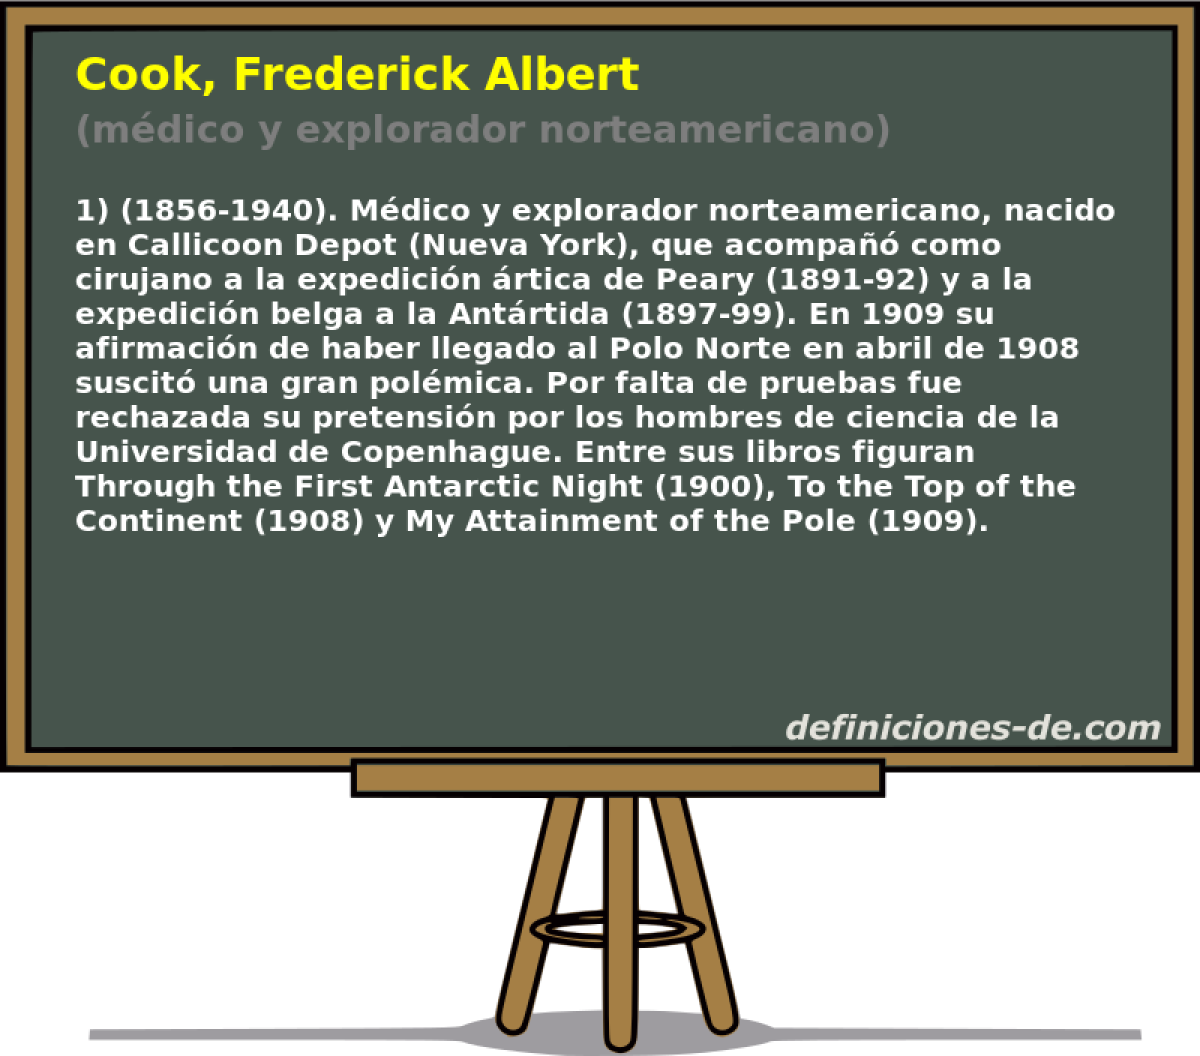 Cook, Frederick Albert (mdico y explorador norteamericano)